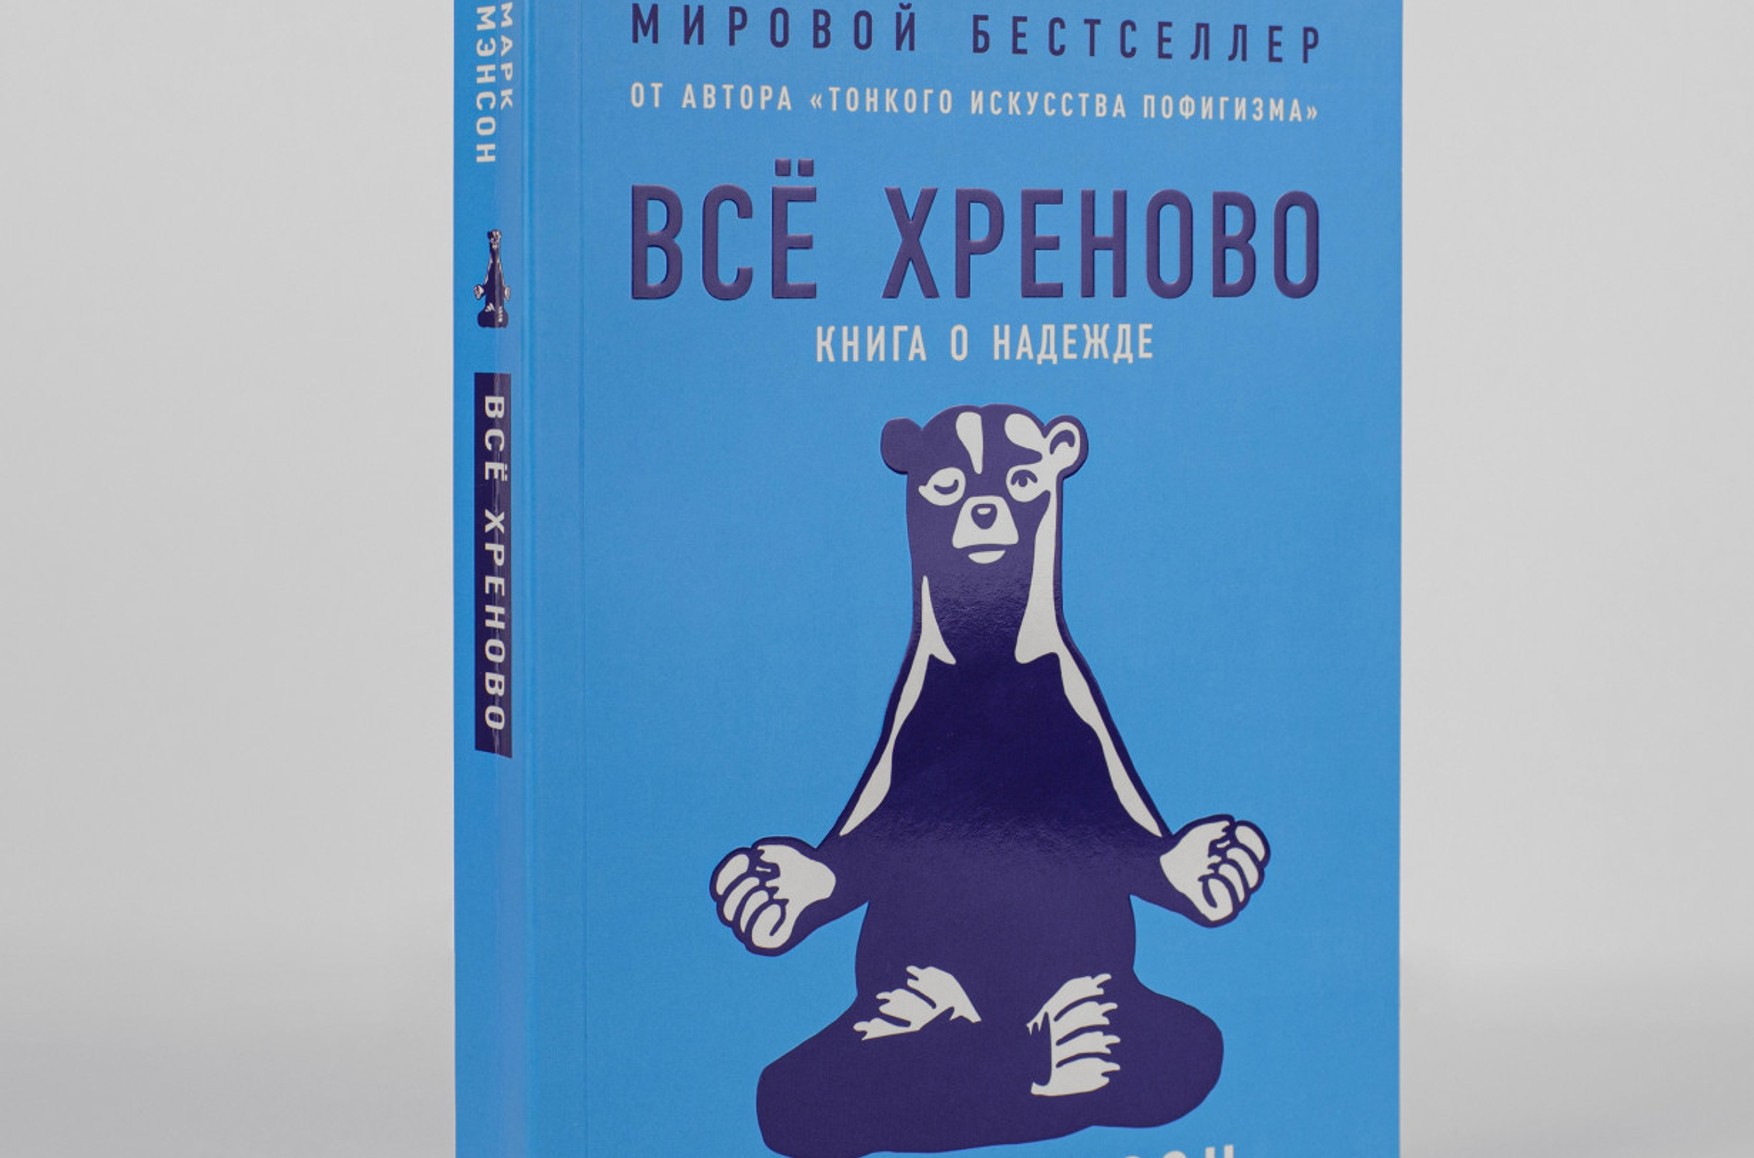 Книга американского писателя вышла в России с замазанными строками. В них автор сравнивал СССР с нацистской Германией